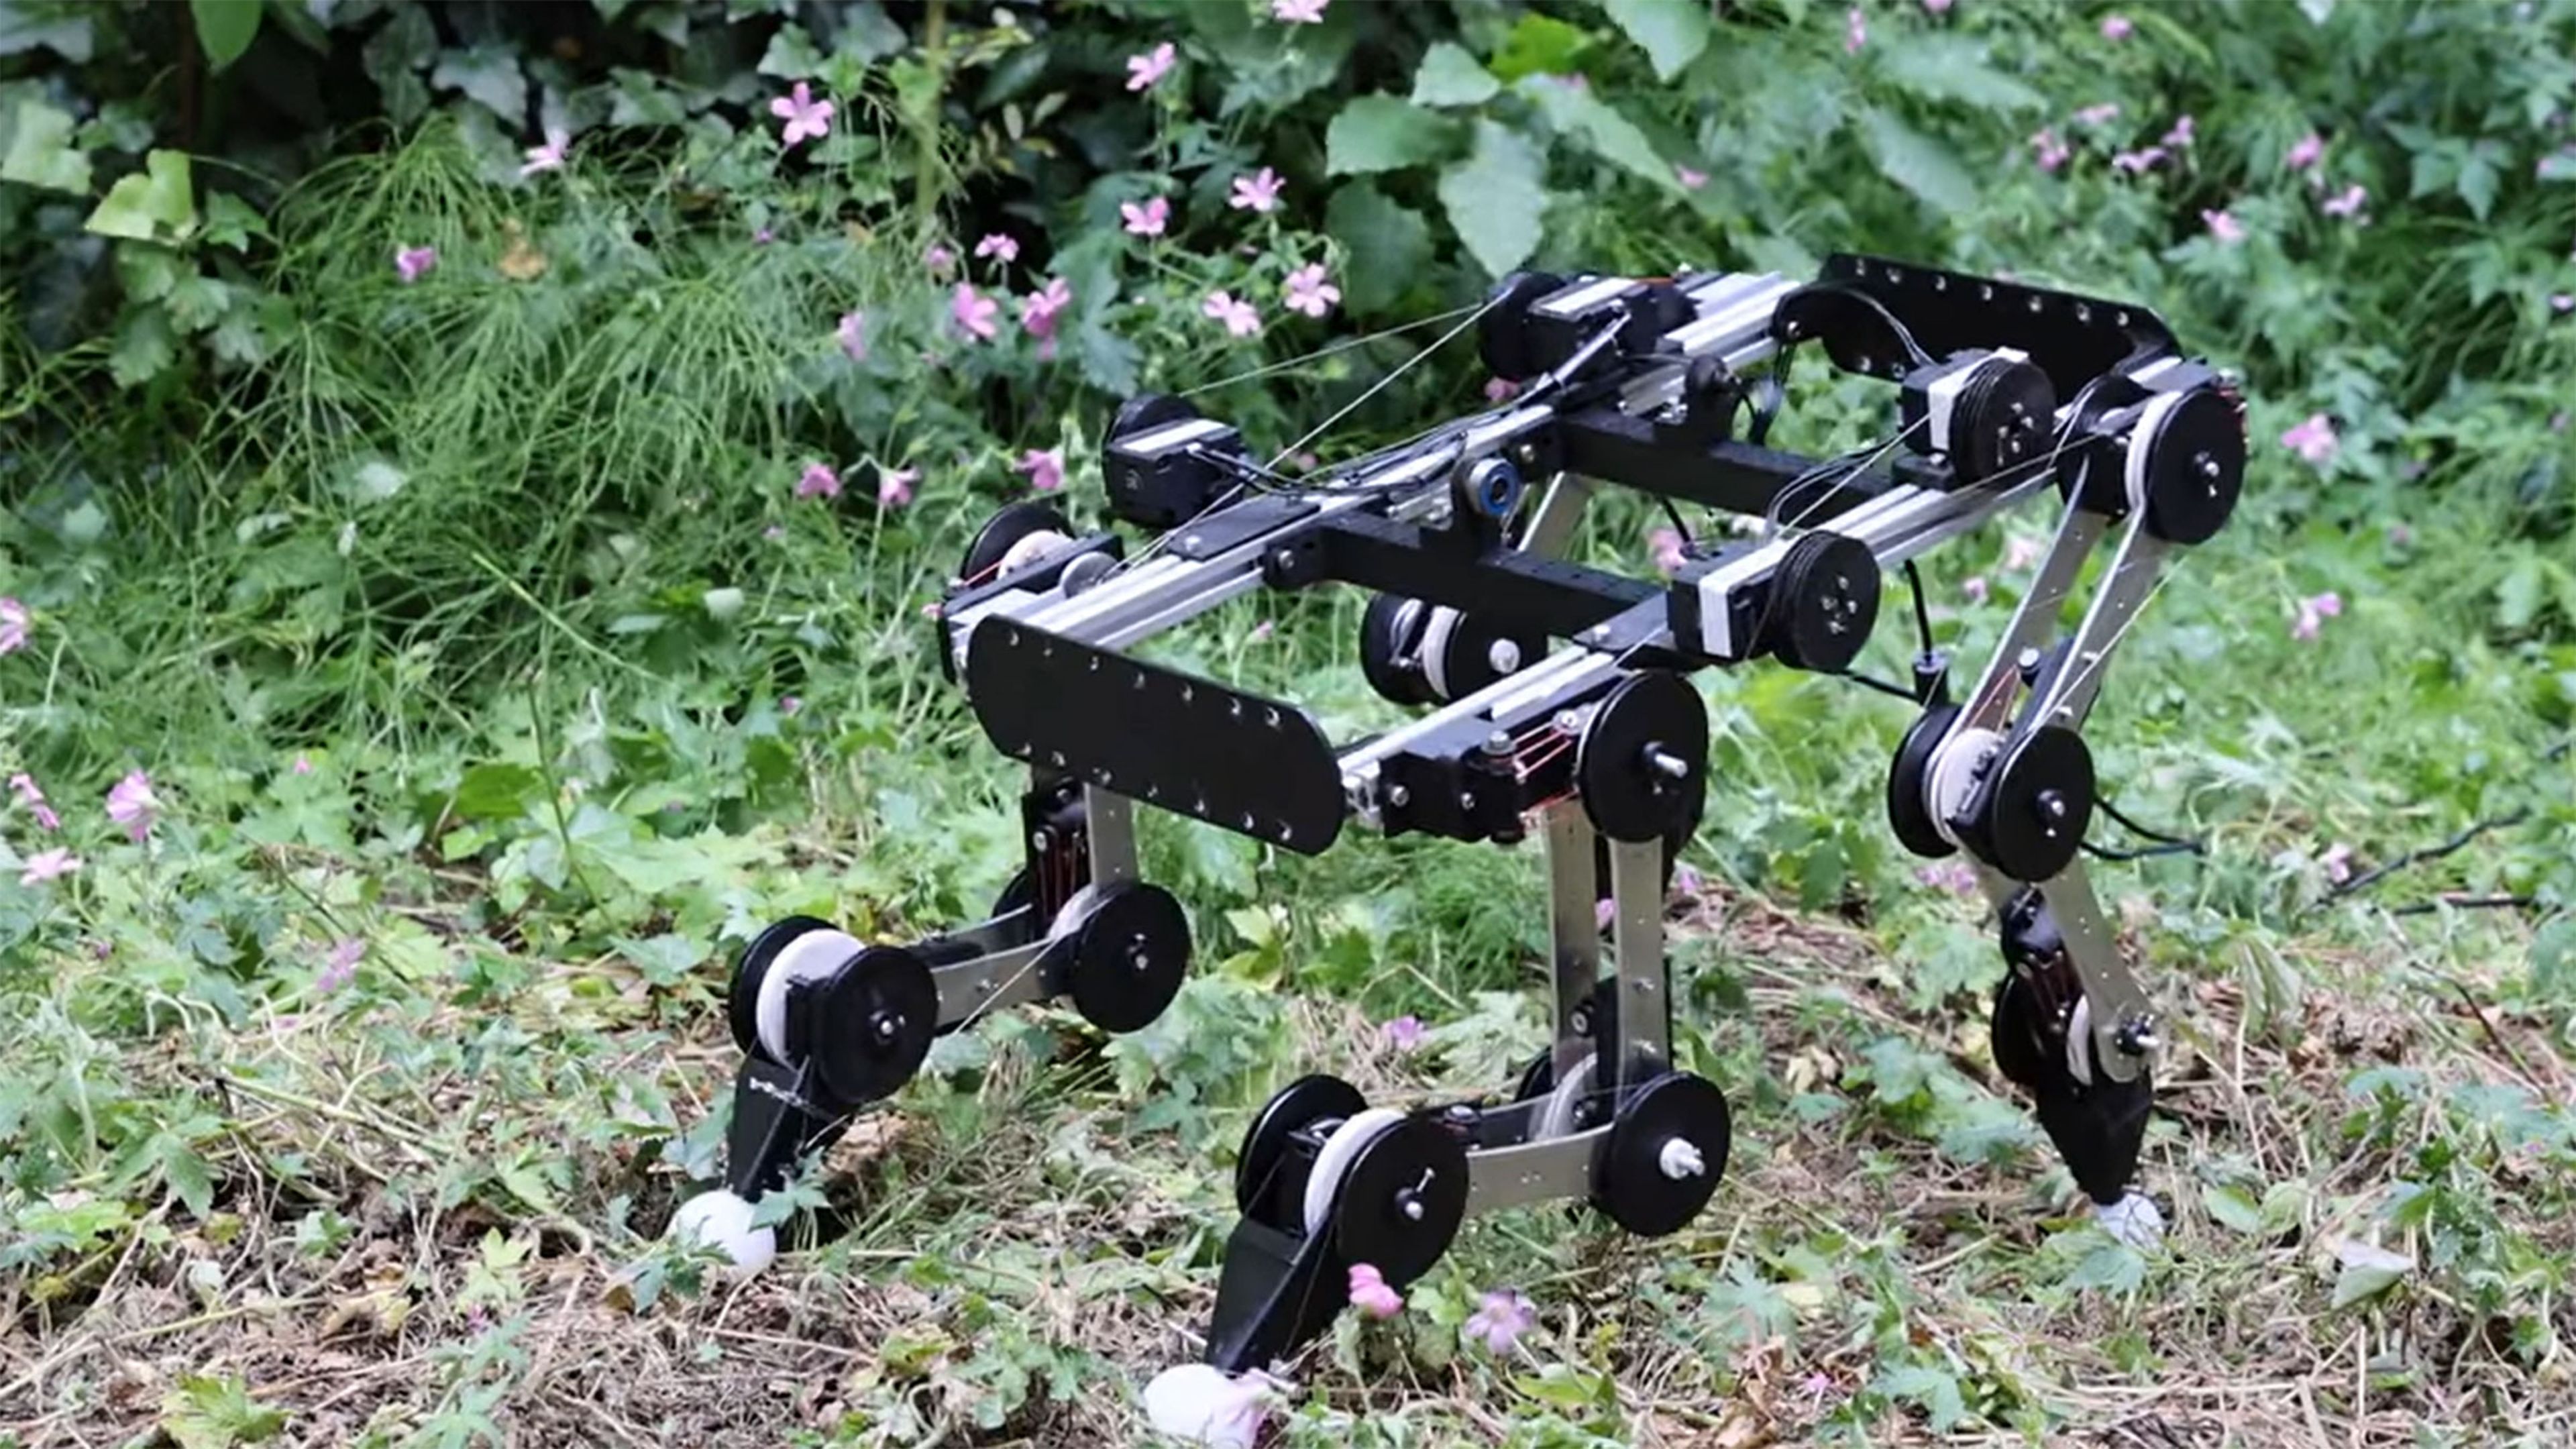 Esta especie de perro robot sigue funcionando por sí solo una vez que se ha puesto en marcha